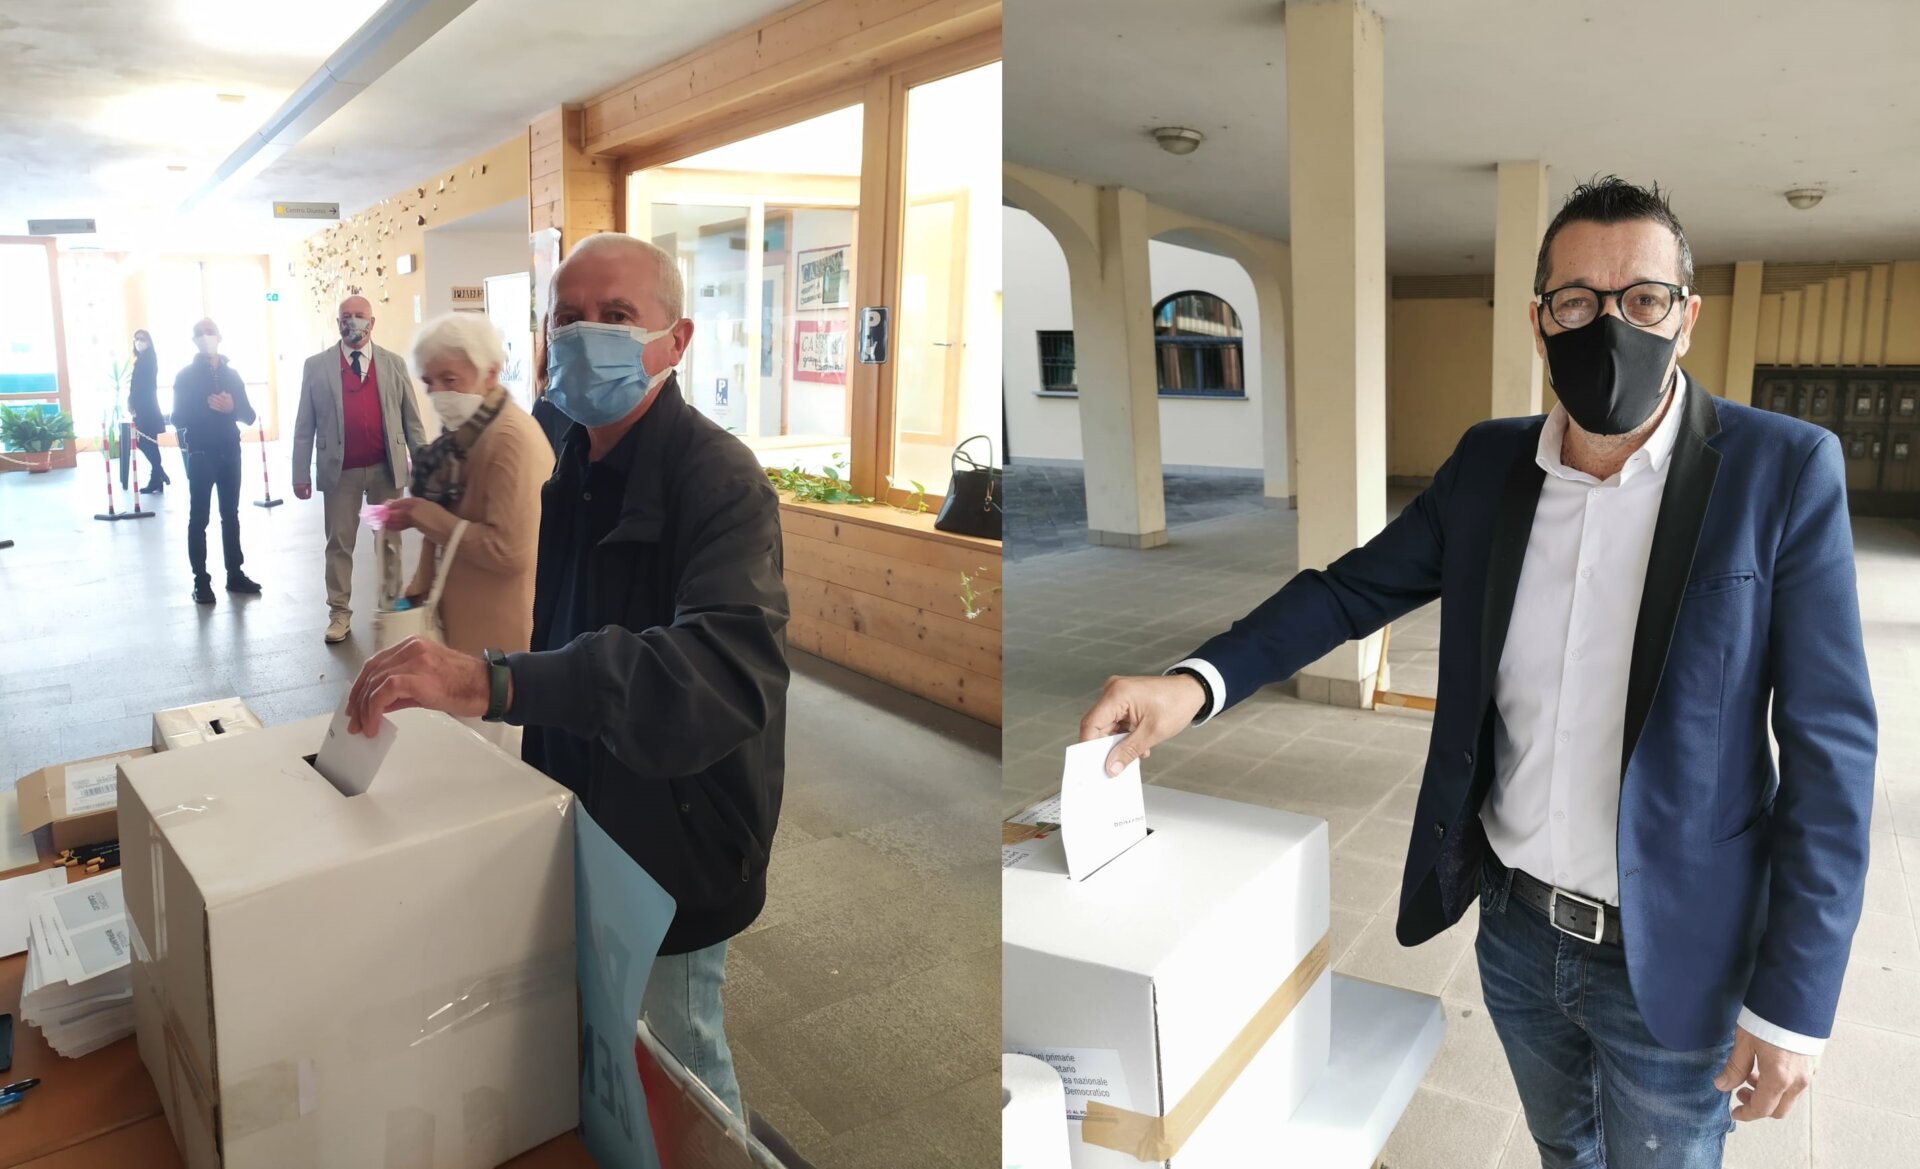 Natele Ripamonti e Vittorio Caglio al voto delle primarie per il centrosinistra a Cassano d'Adda